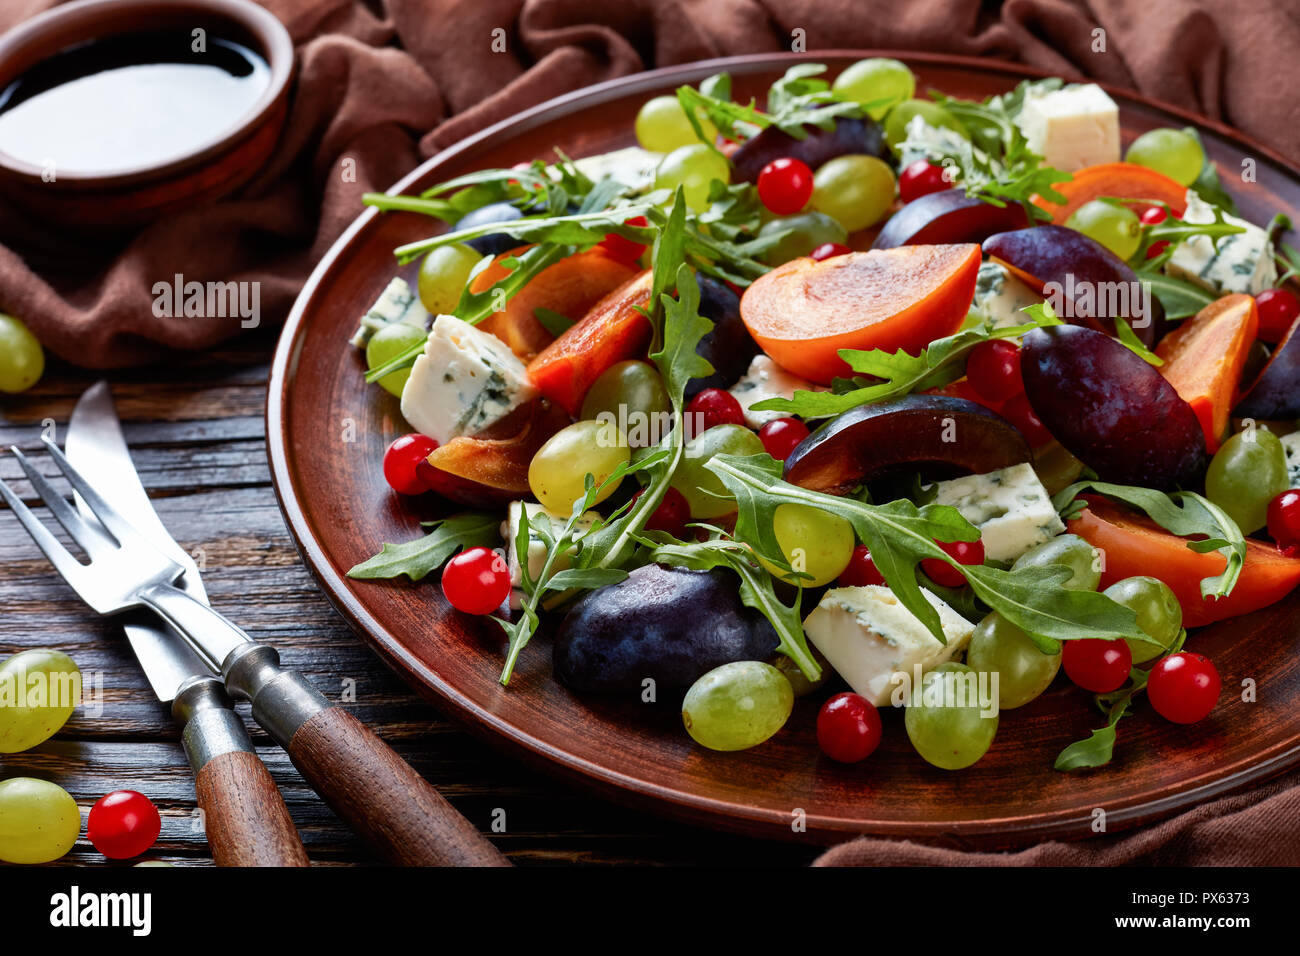 Close-up of delicious salade d'automne au chocolat avec moule bleu kaki, fromage, raisin vert, tranches de prune et la roquette sur une plaque de faïence avec ingrédients Banque D'Images